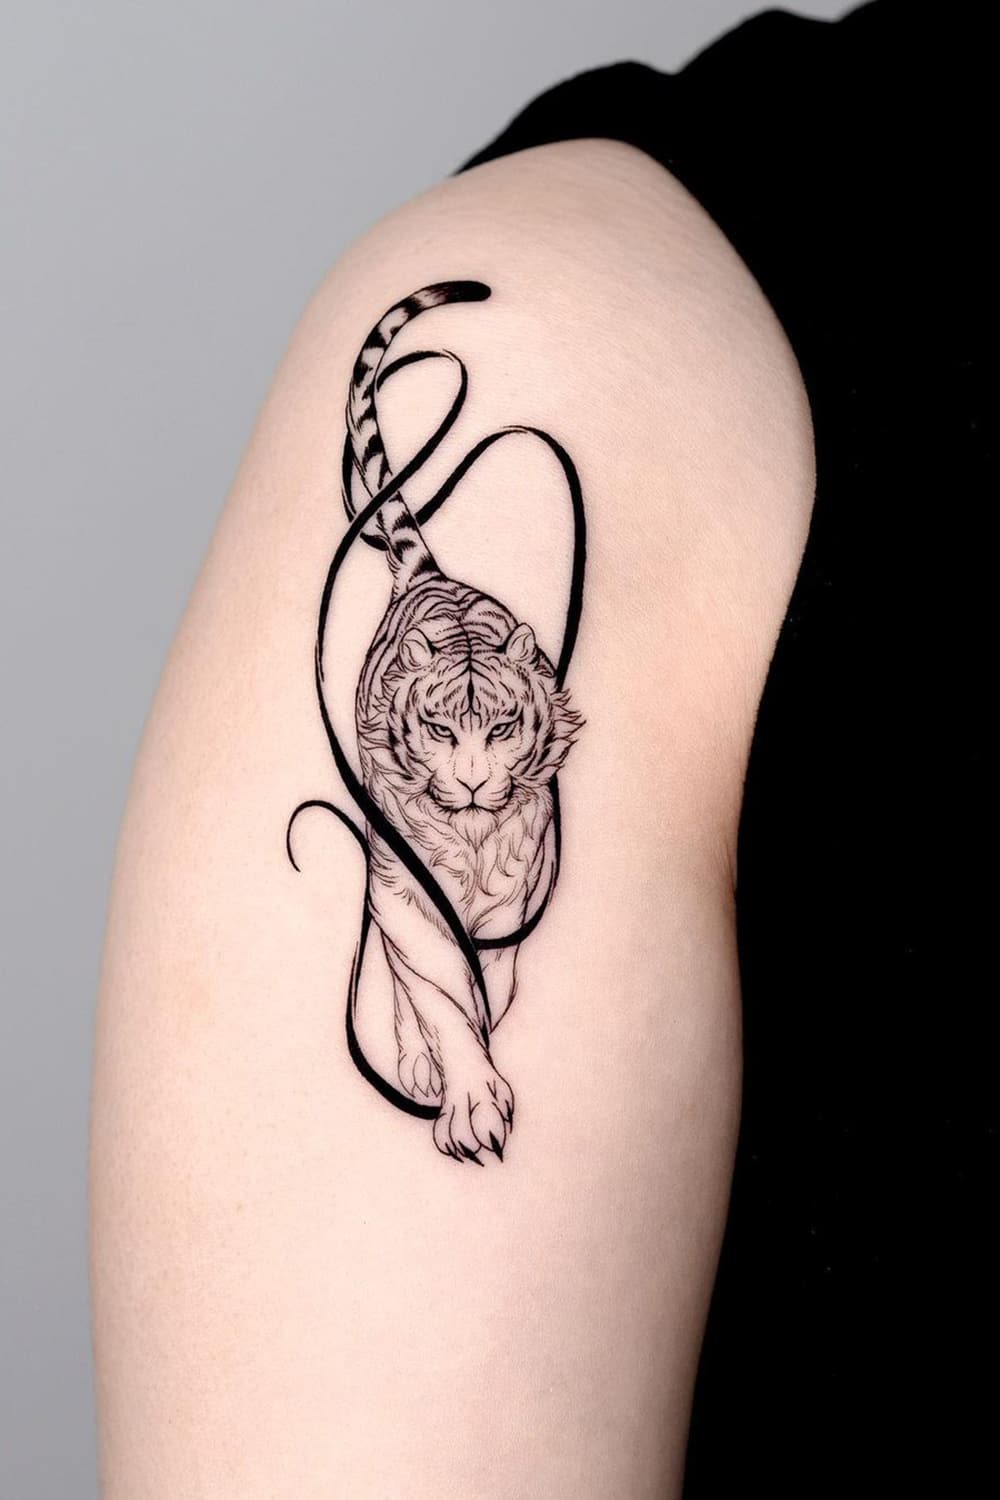 Cool tiger tattoo